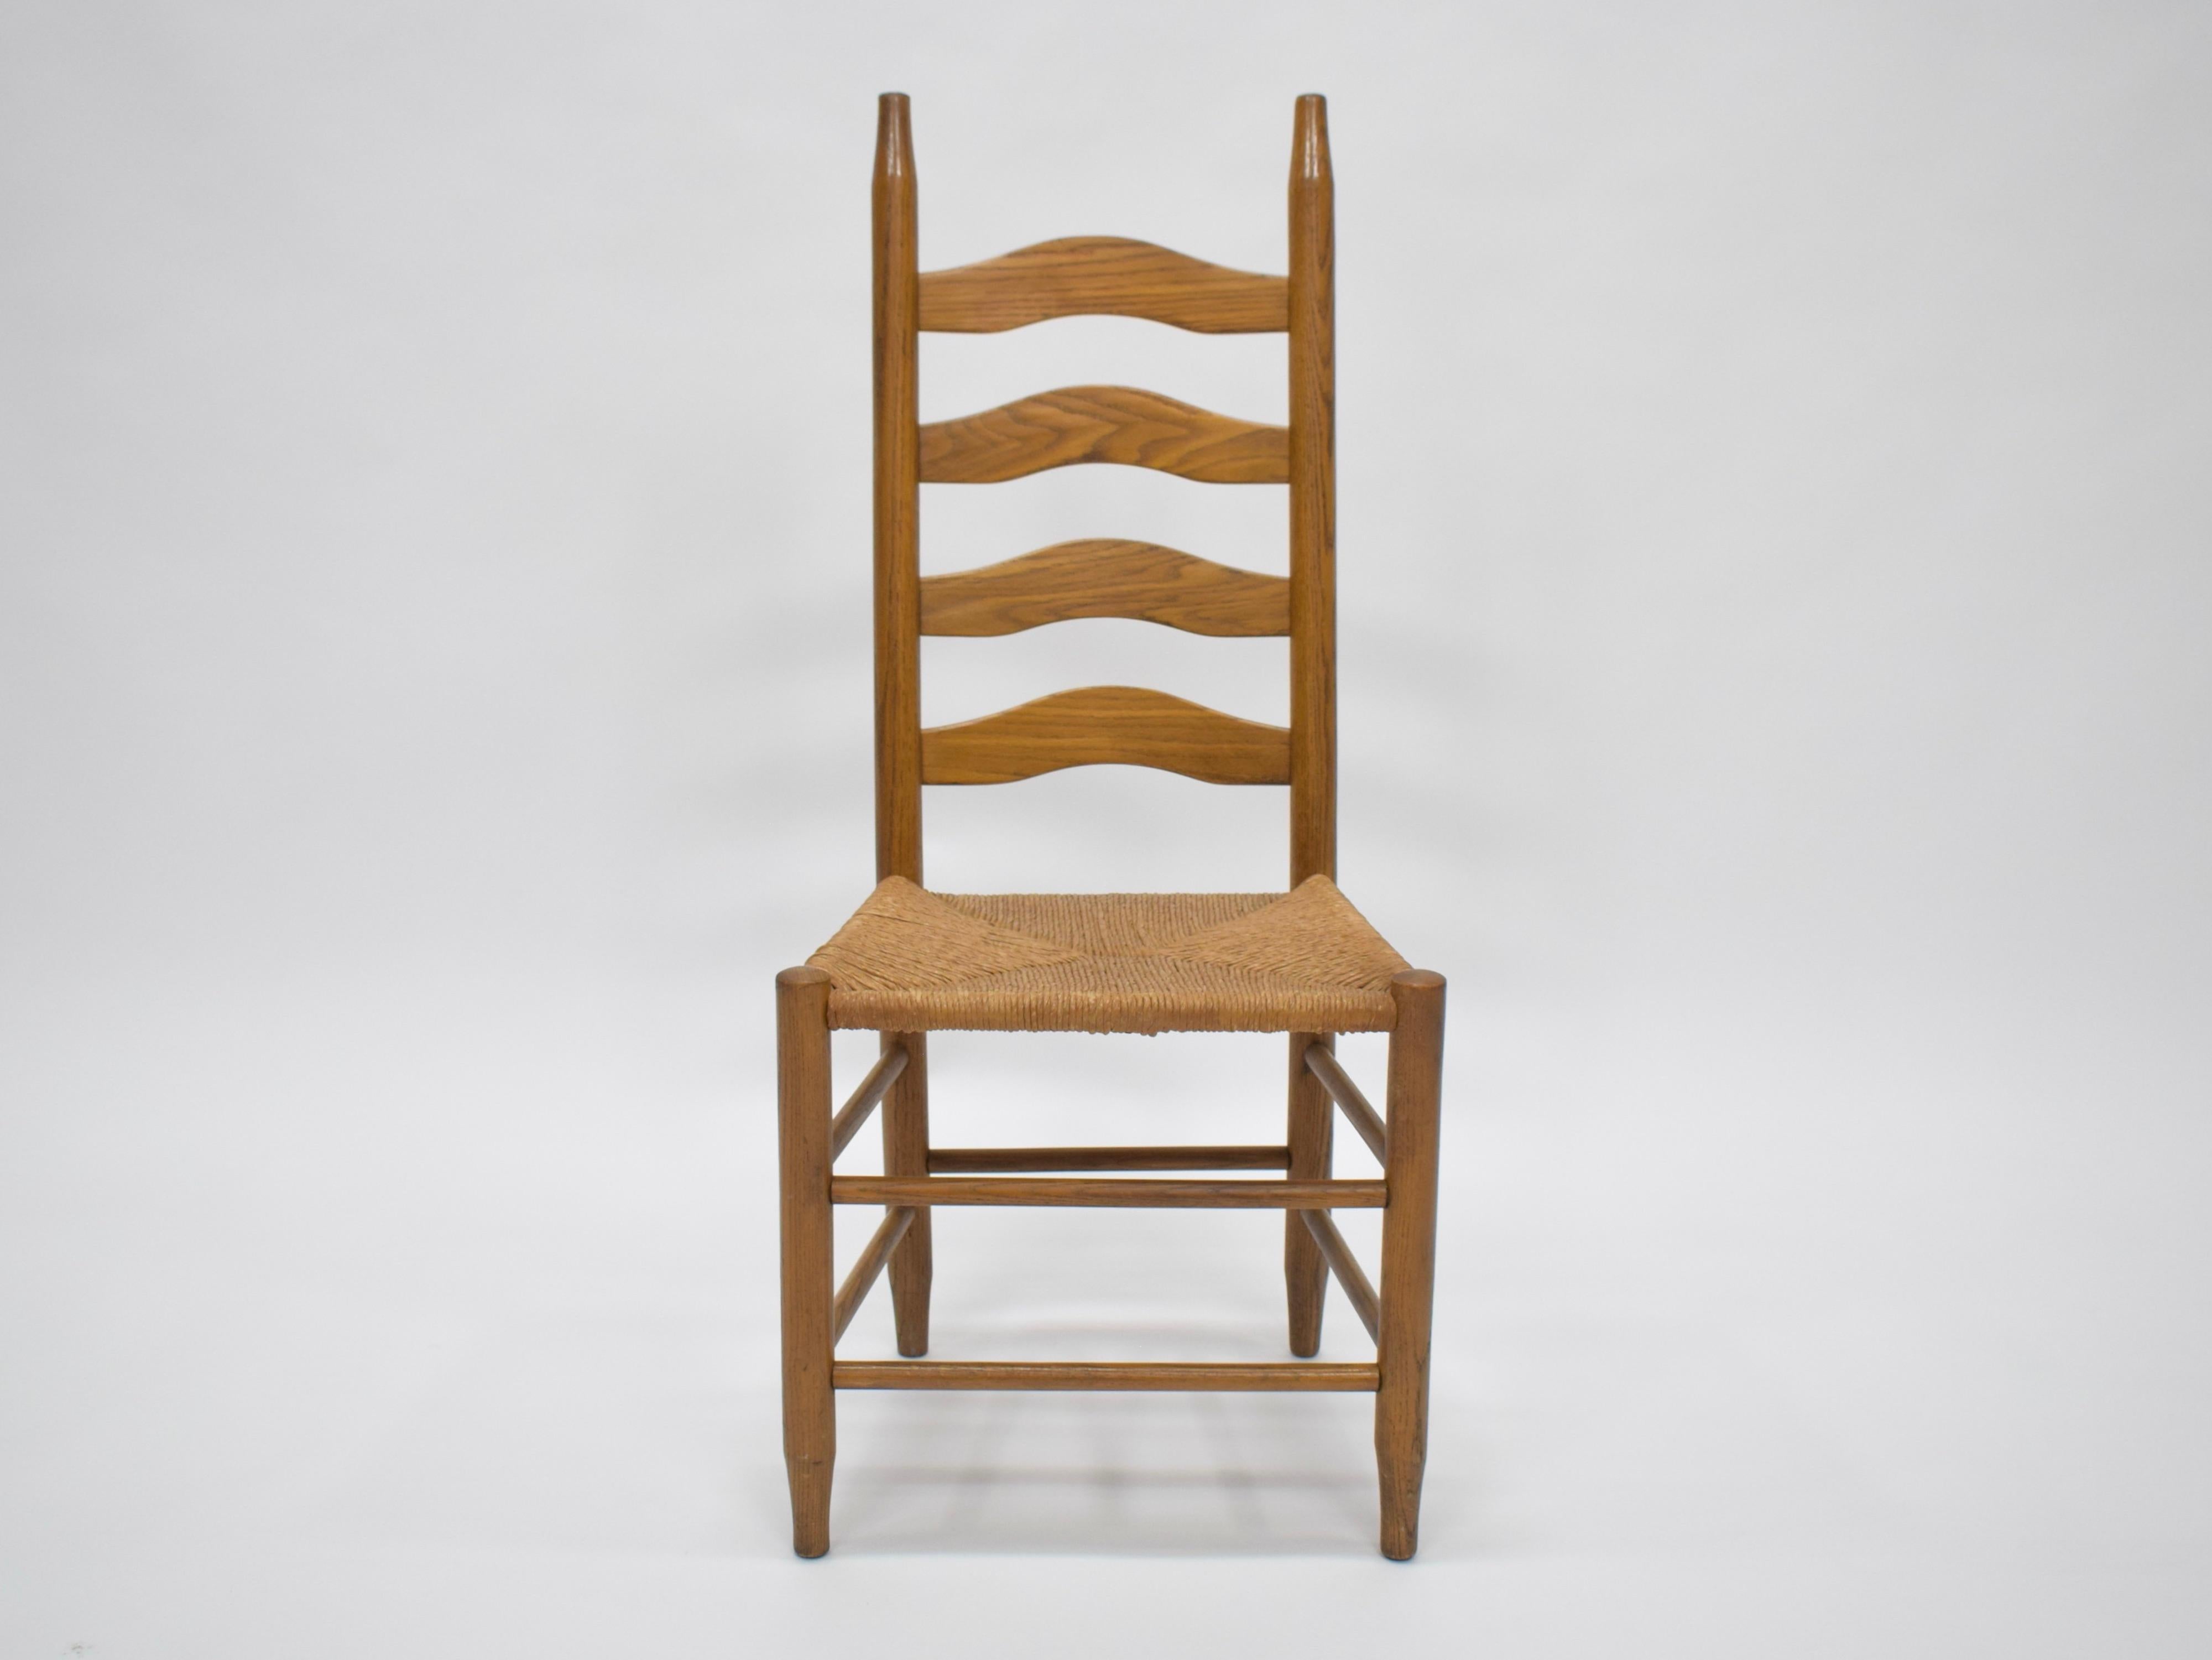 Paire de chaises en bois massif et assise en jonc pour ces deux chaises conçues dans le style de Charlotte Perriand. En bon état d'origine, avec une usure mineure conforme à l'âge et à l'usage, préservant une belle patine. Le jonc des sièges est un